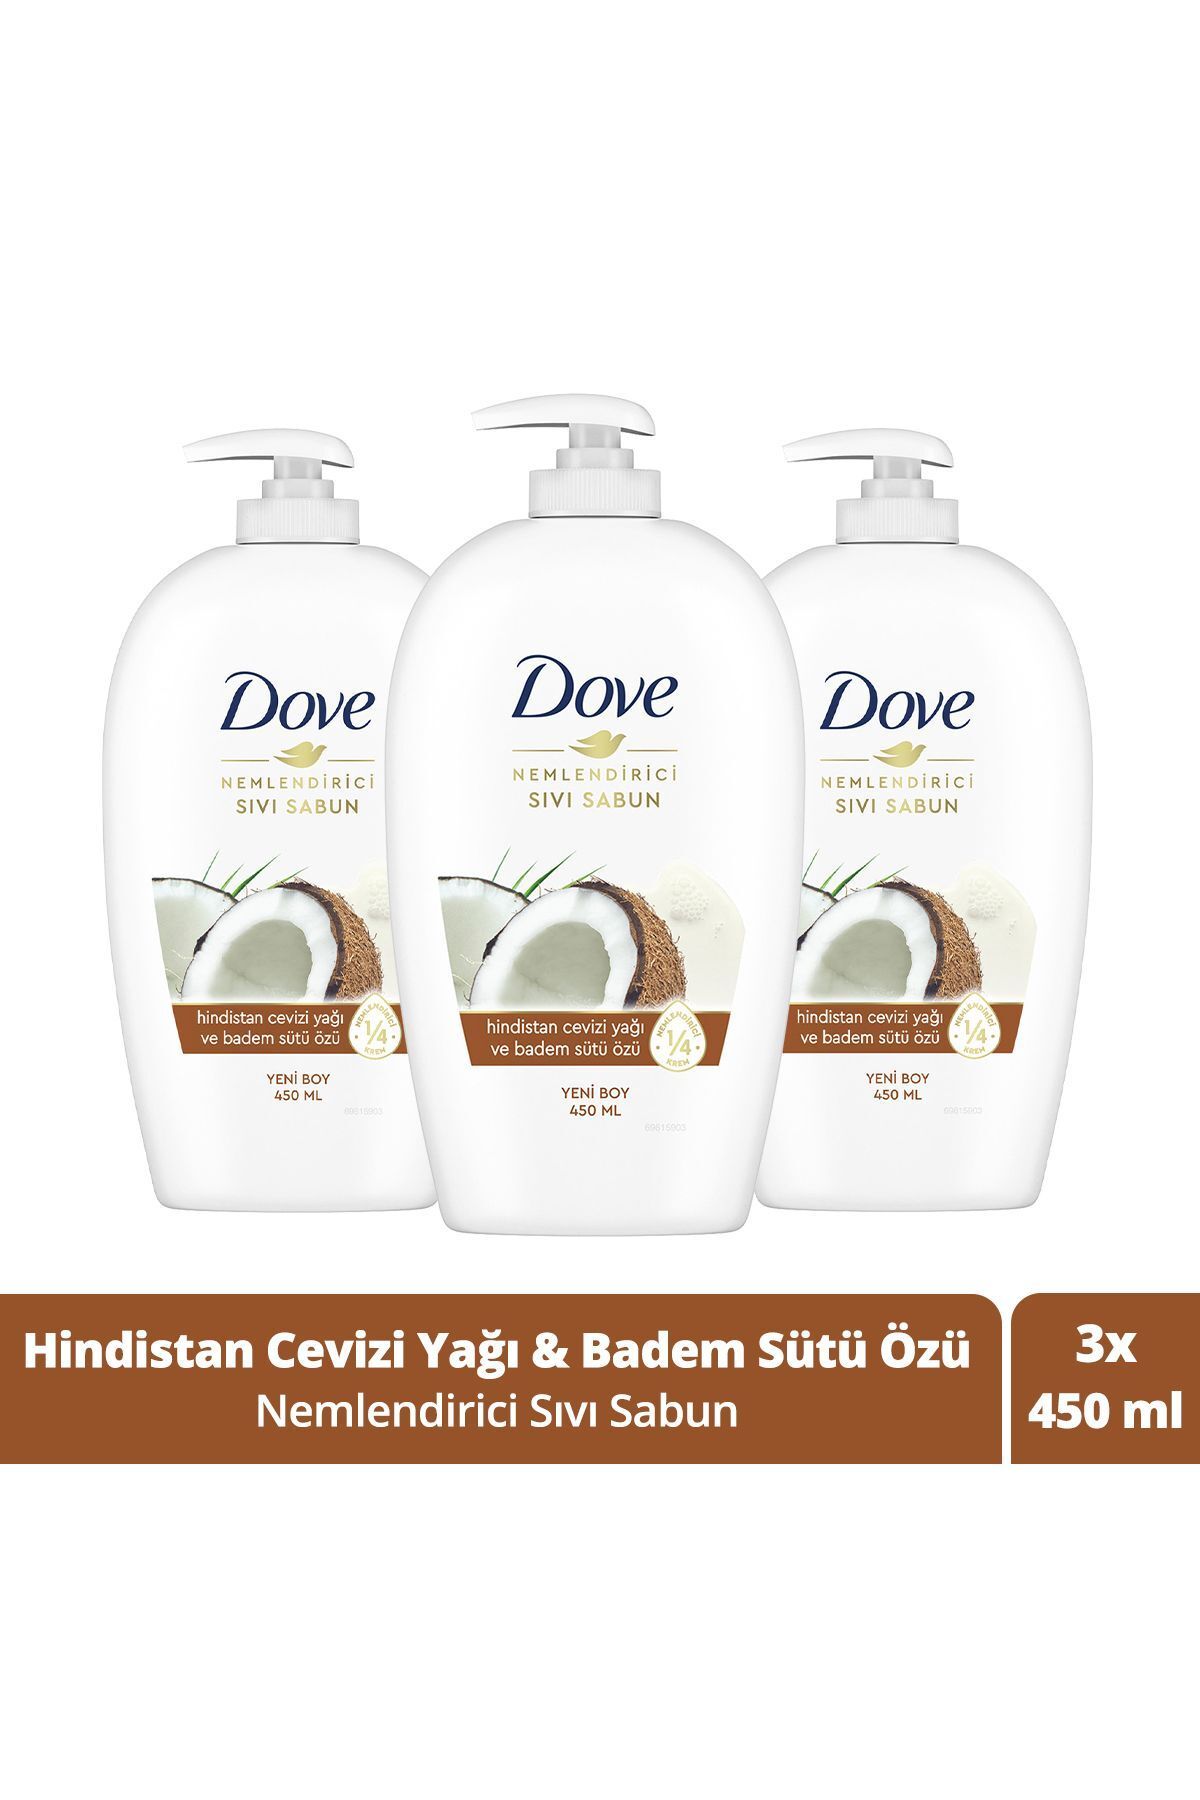 Dove Nemlendirici Sıvı Sabun Hindistan Cevizi Yağı Ve Badem Sütü Özü 450 ml X3 Adet